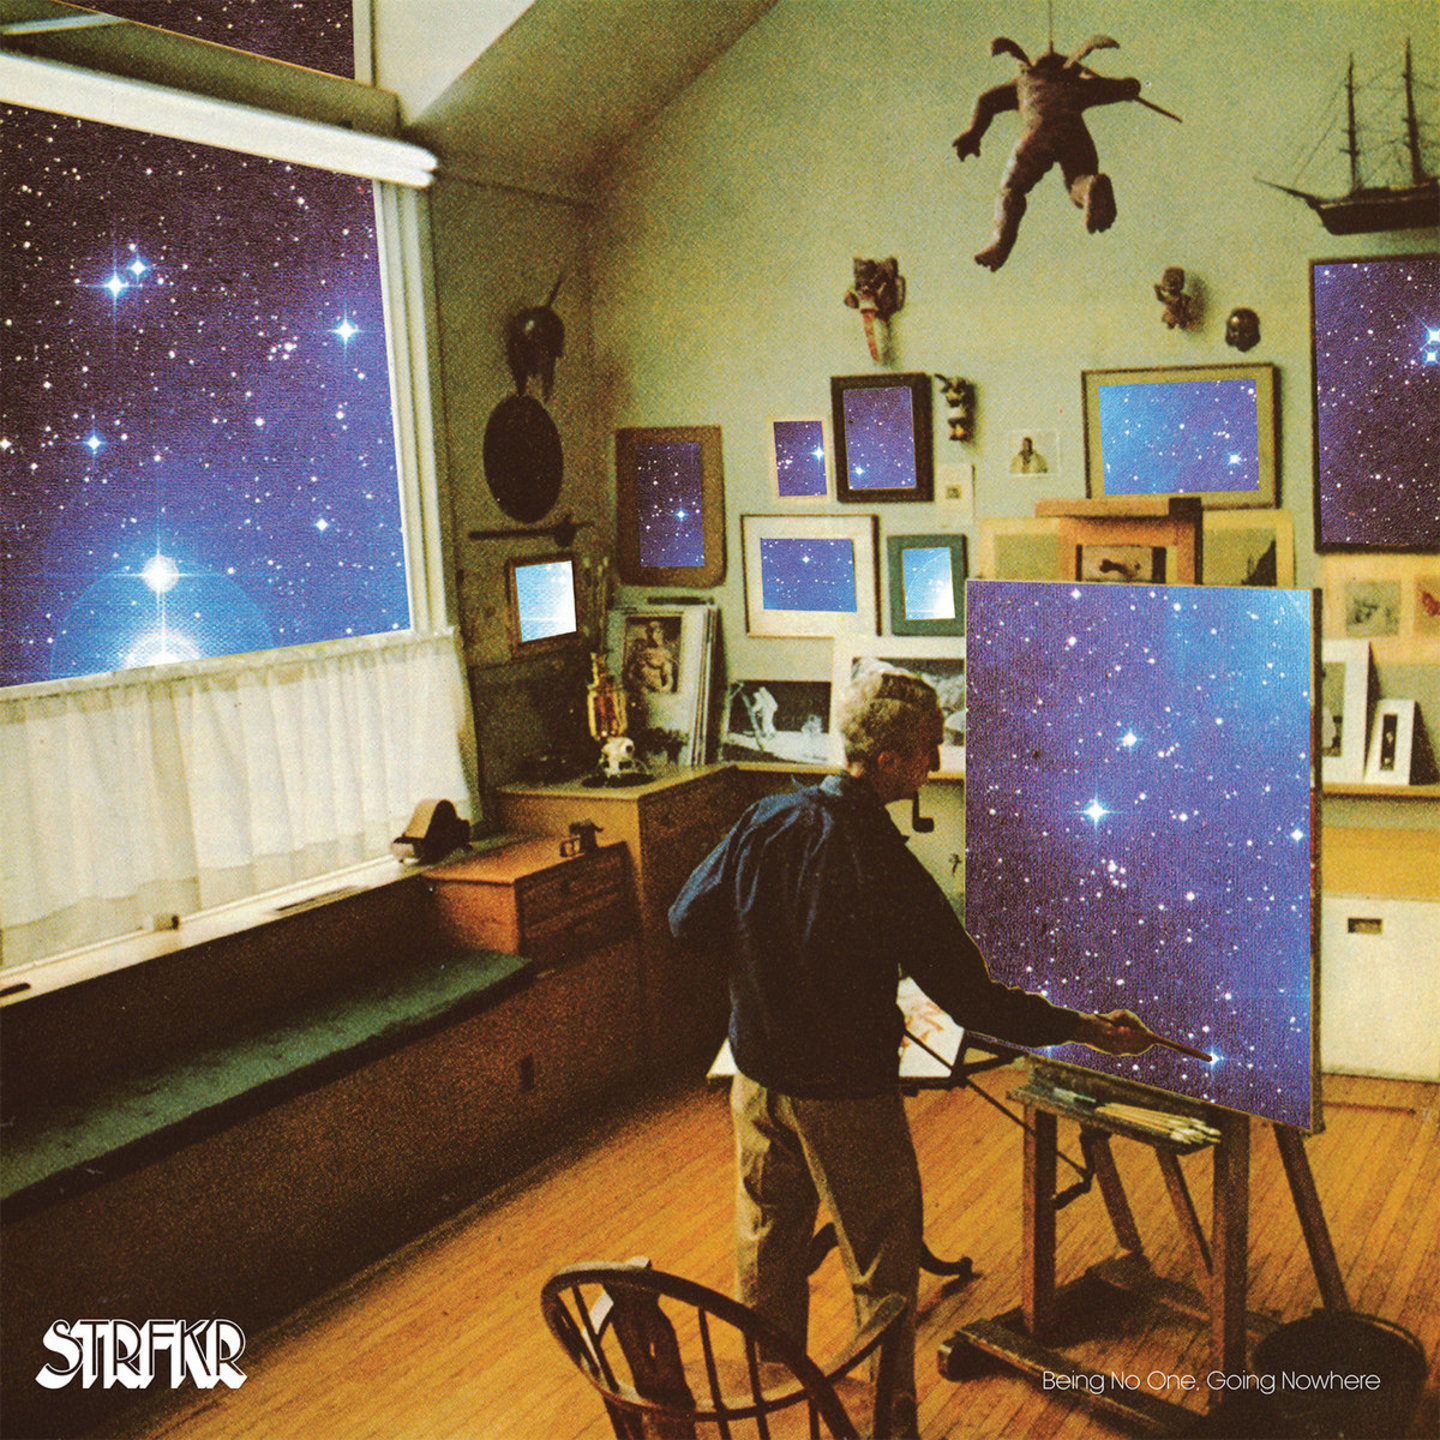 STRFKR - Being No One, Going Nowhere LP (Light Blue Vinyl)